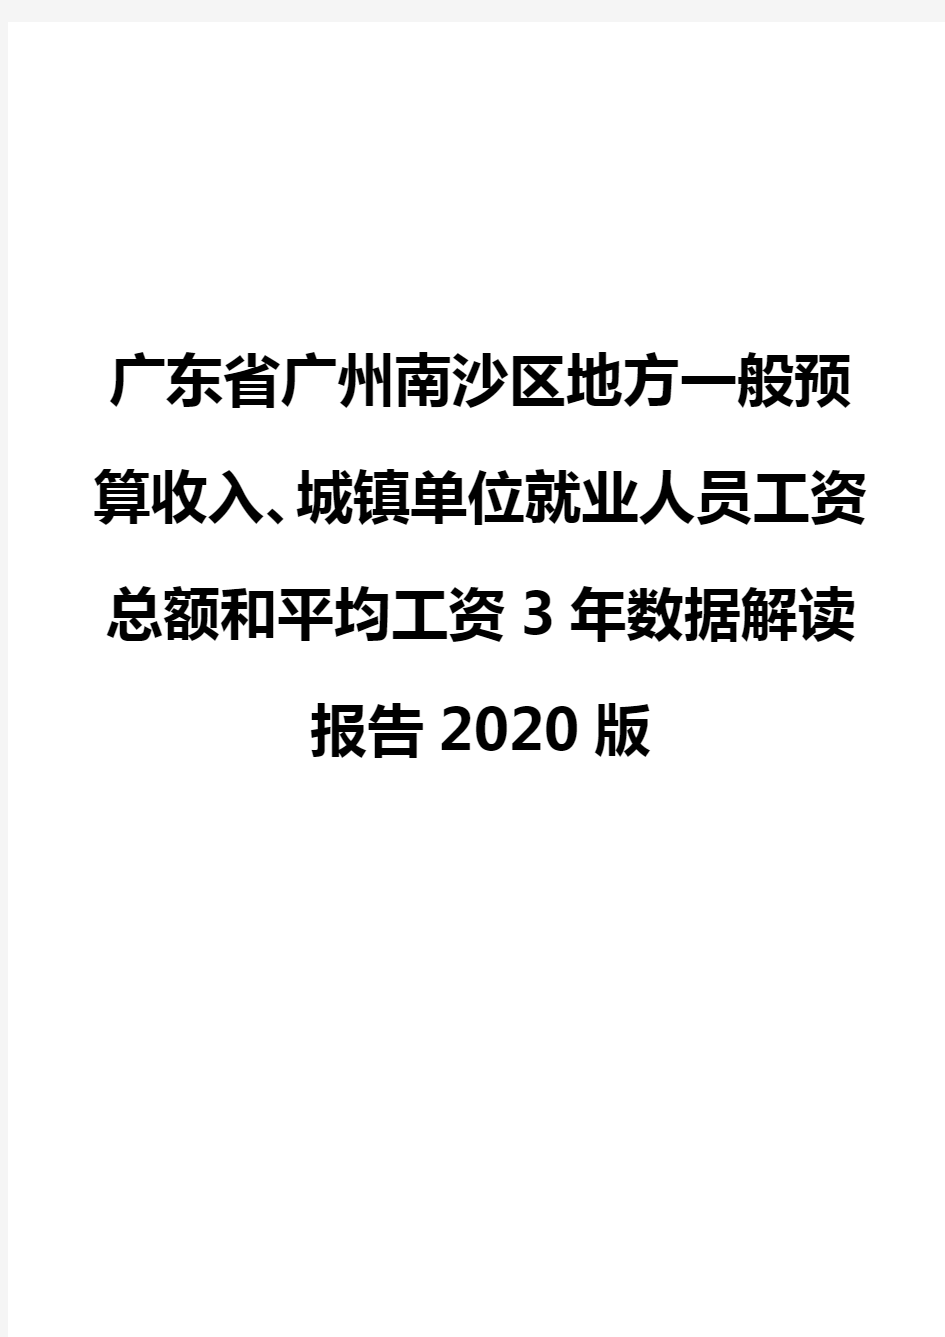 广东省广州南沙区地方一般预算收入、城镇单位就业人员工资总额和平均工资3年数据解读报告2020版